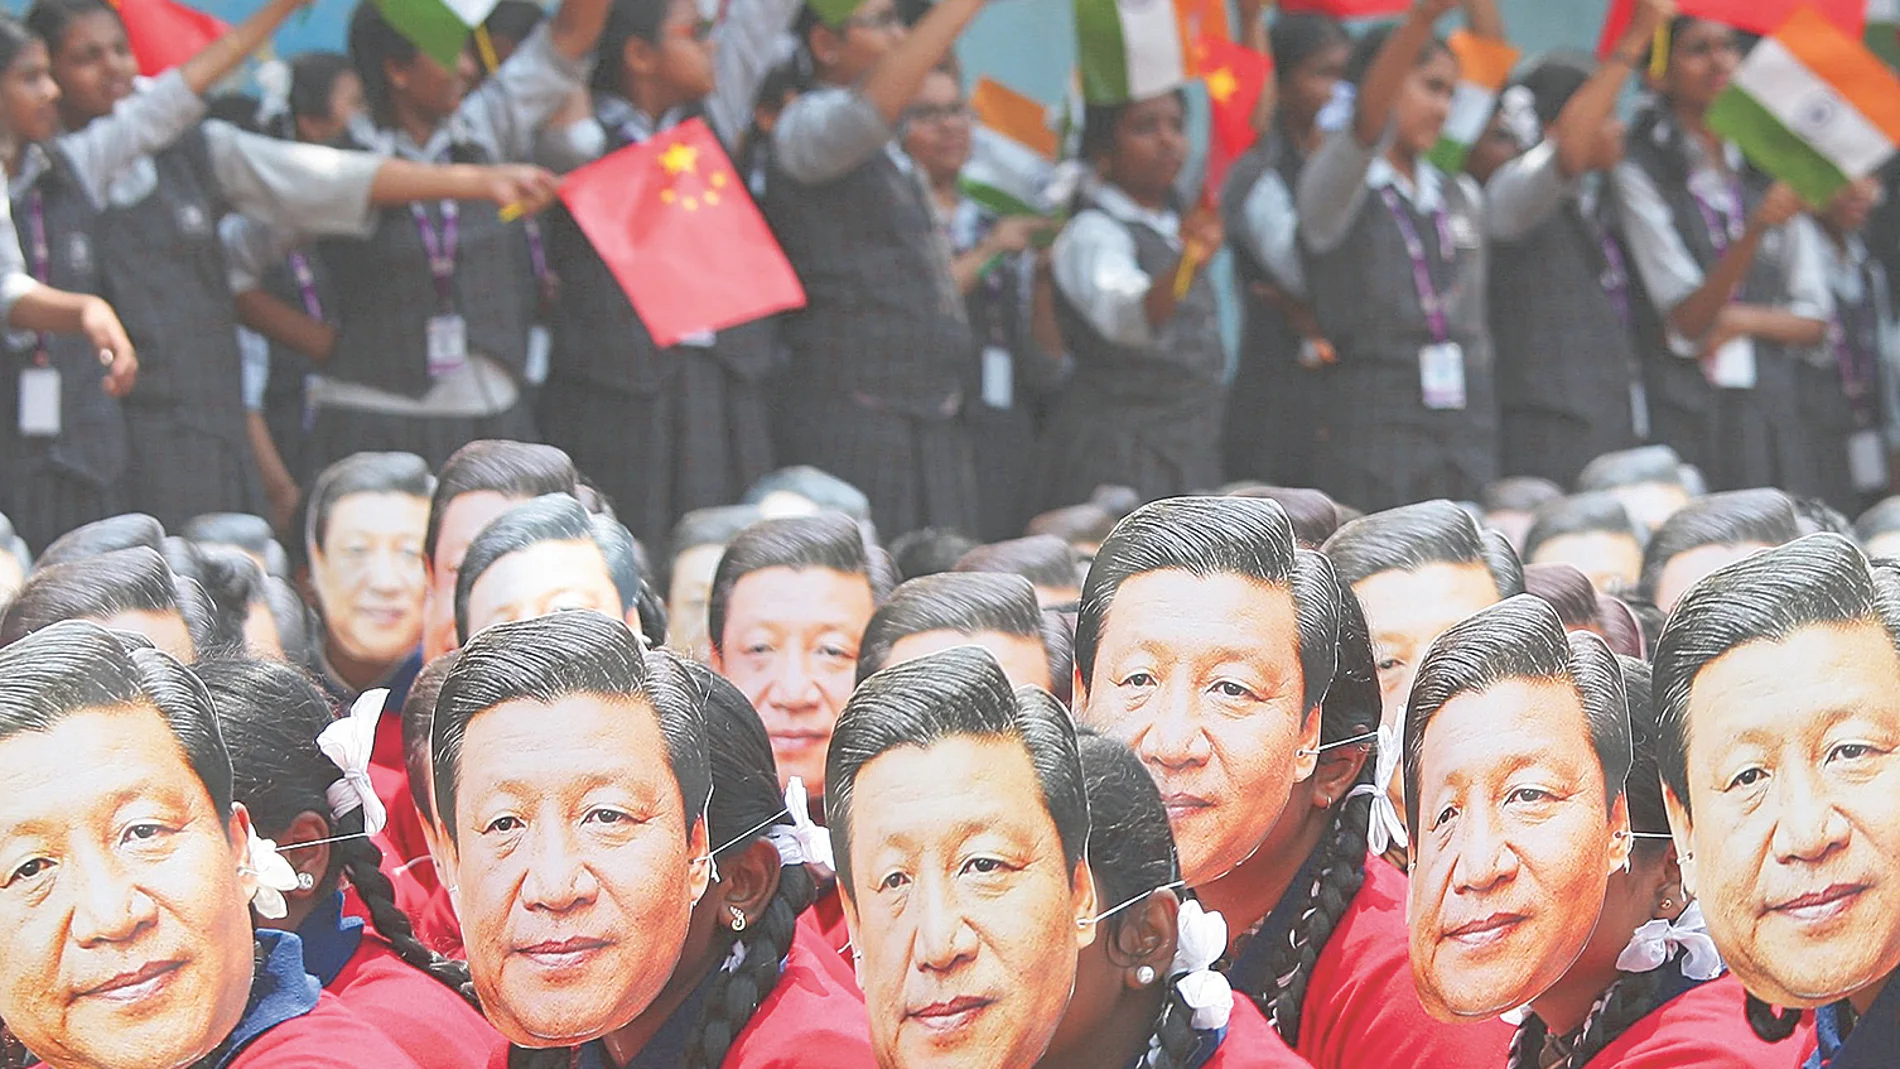 Varios estudiantes con una careta del presidente de China, Xi Jinping, en un congreso en India